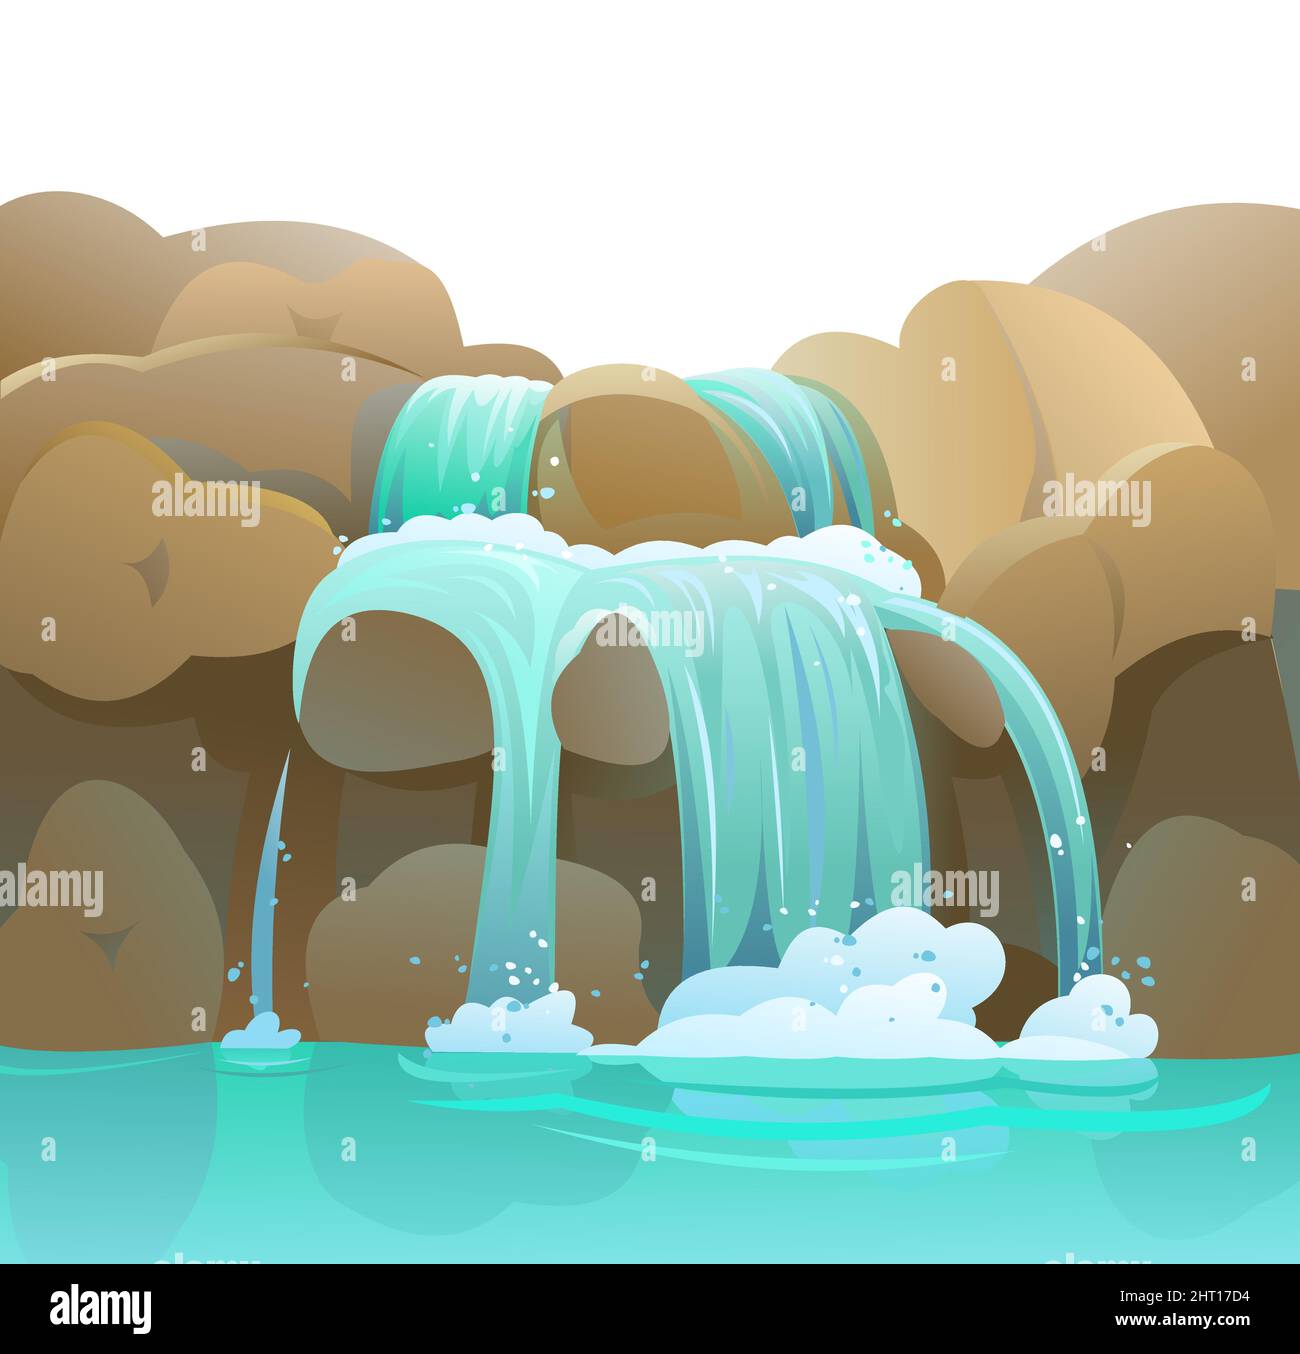 Wasserfall zwischen Felsen. Kaskade schimmert nach unten. Fließendes Wasser. Cooler Cartoon-Style. Abgerundete Steine. Objekt auf weißem Hintergrund isoliert. Vektor. Stock Vektor